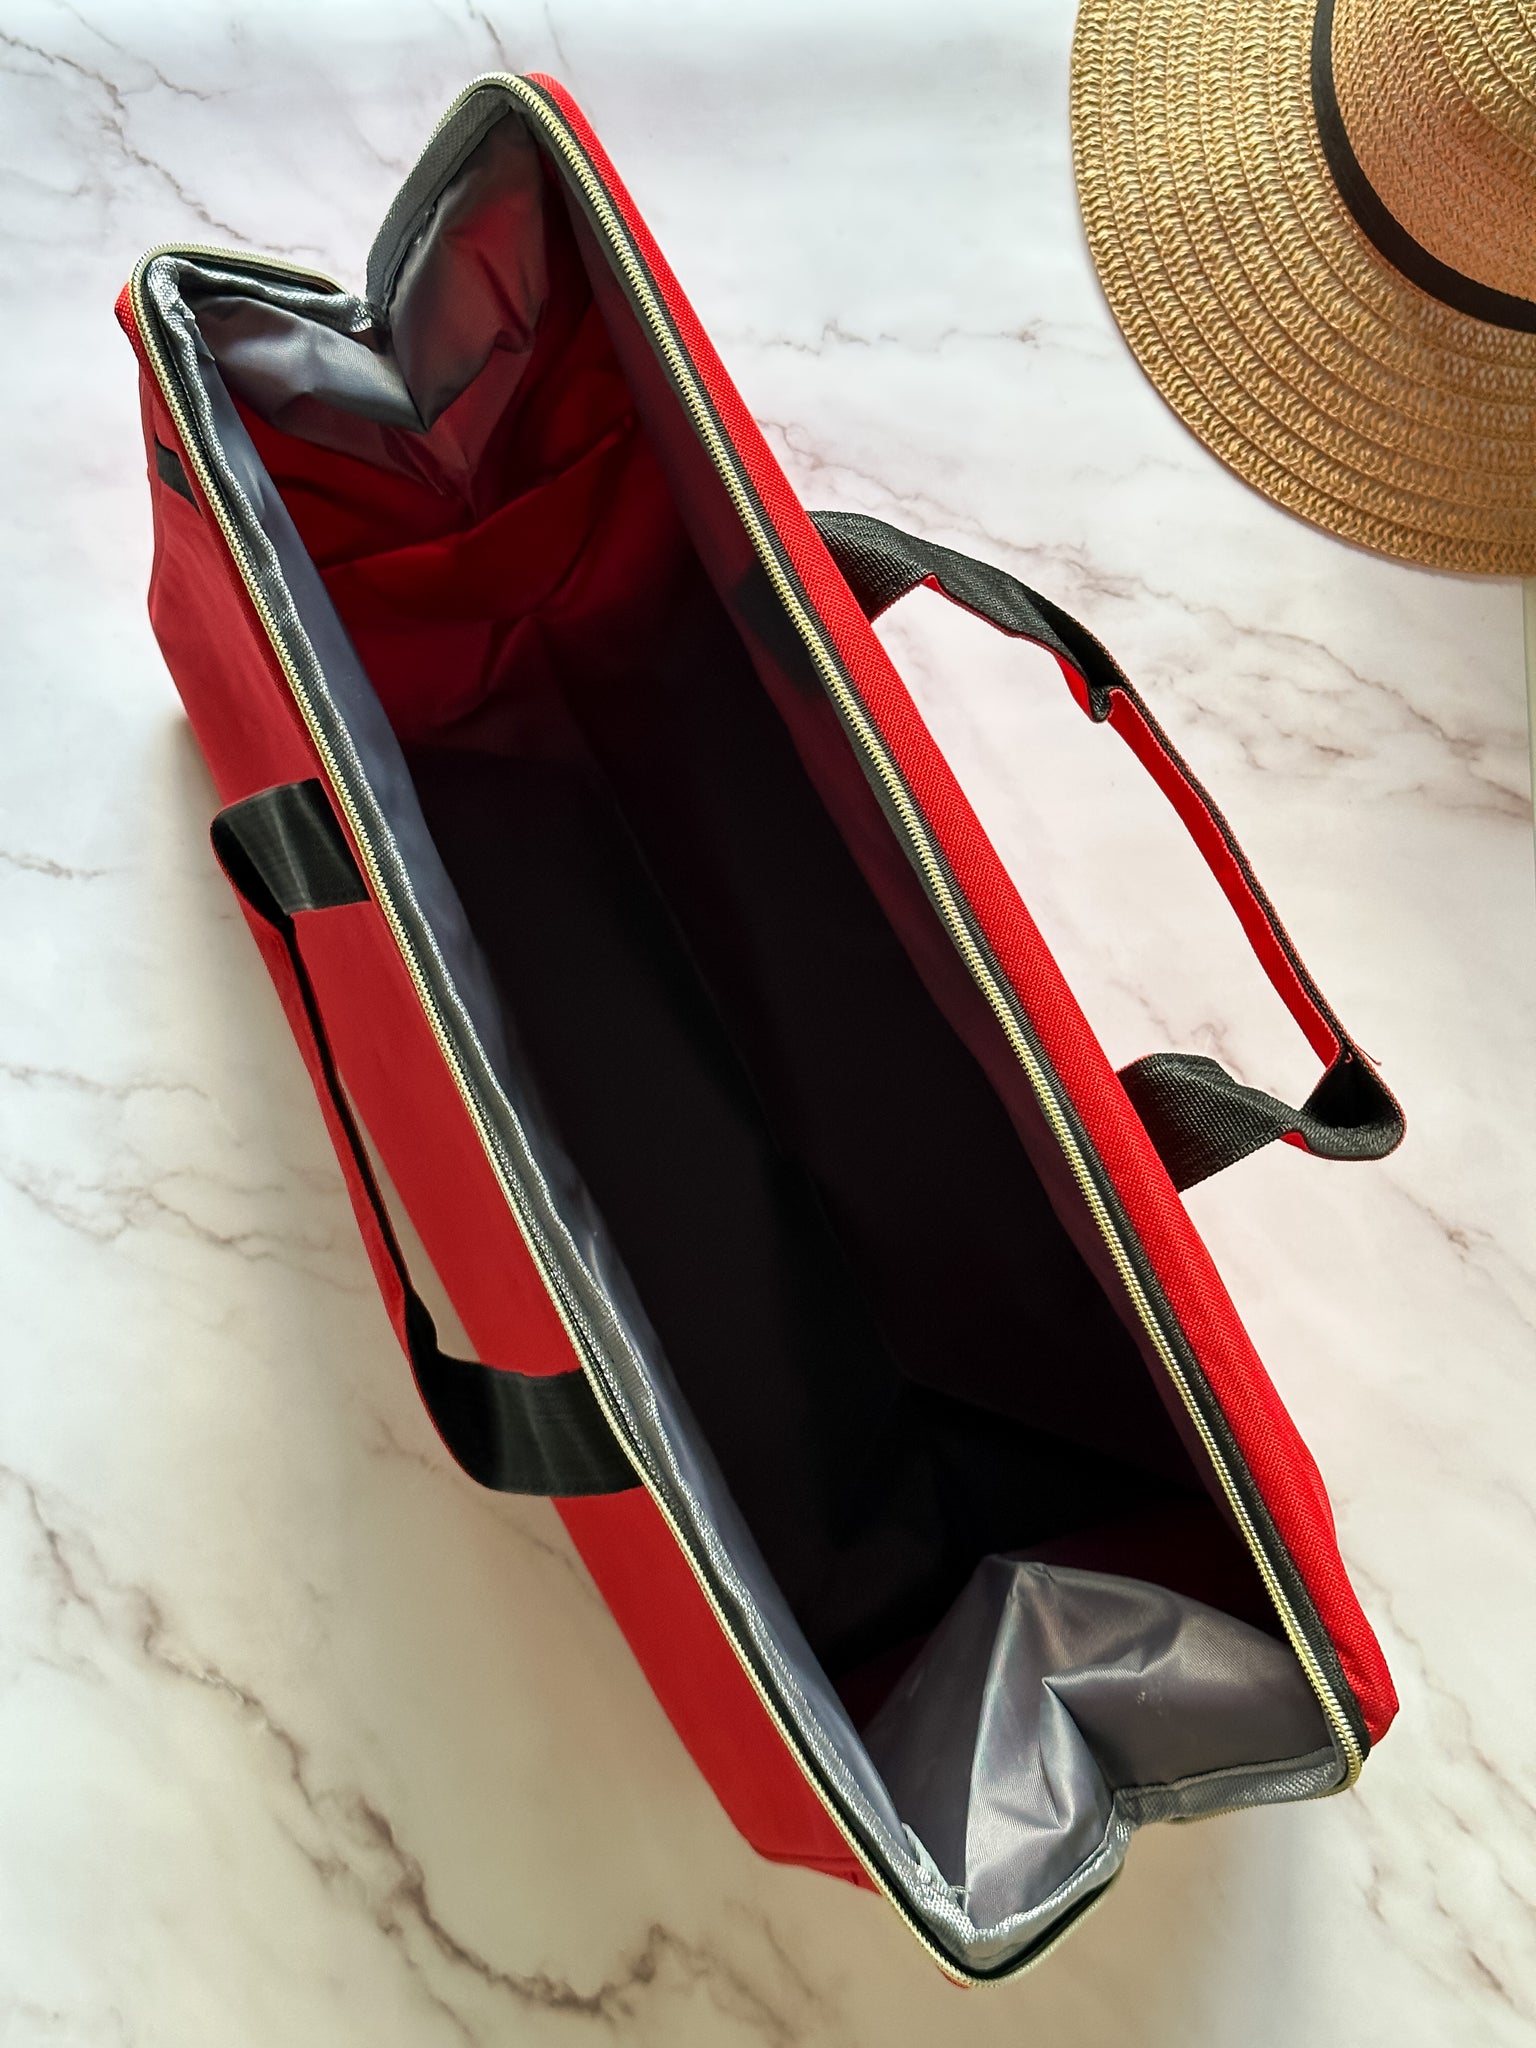 Timeless Red Travel Bag